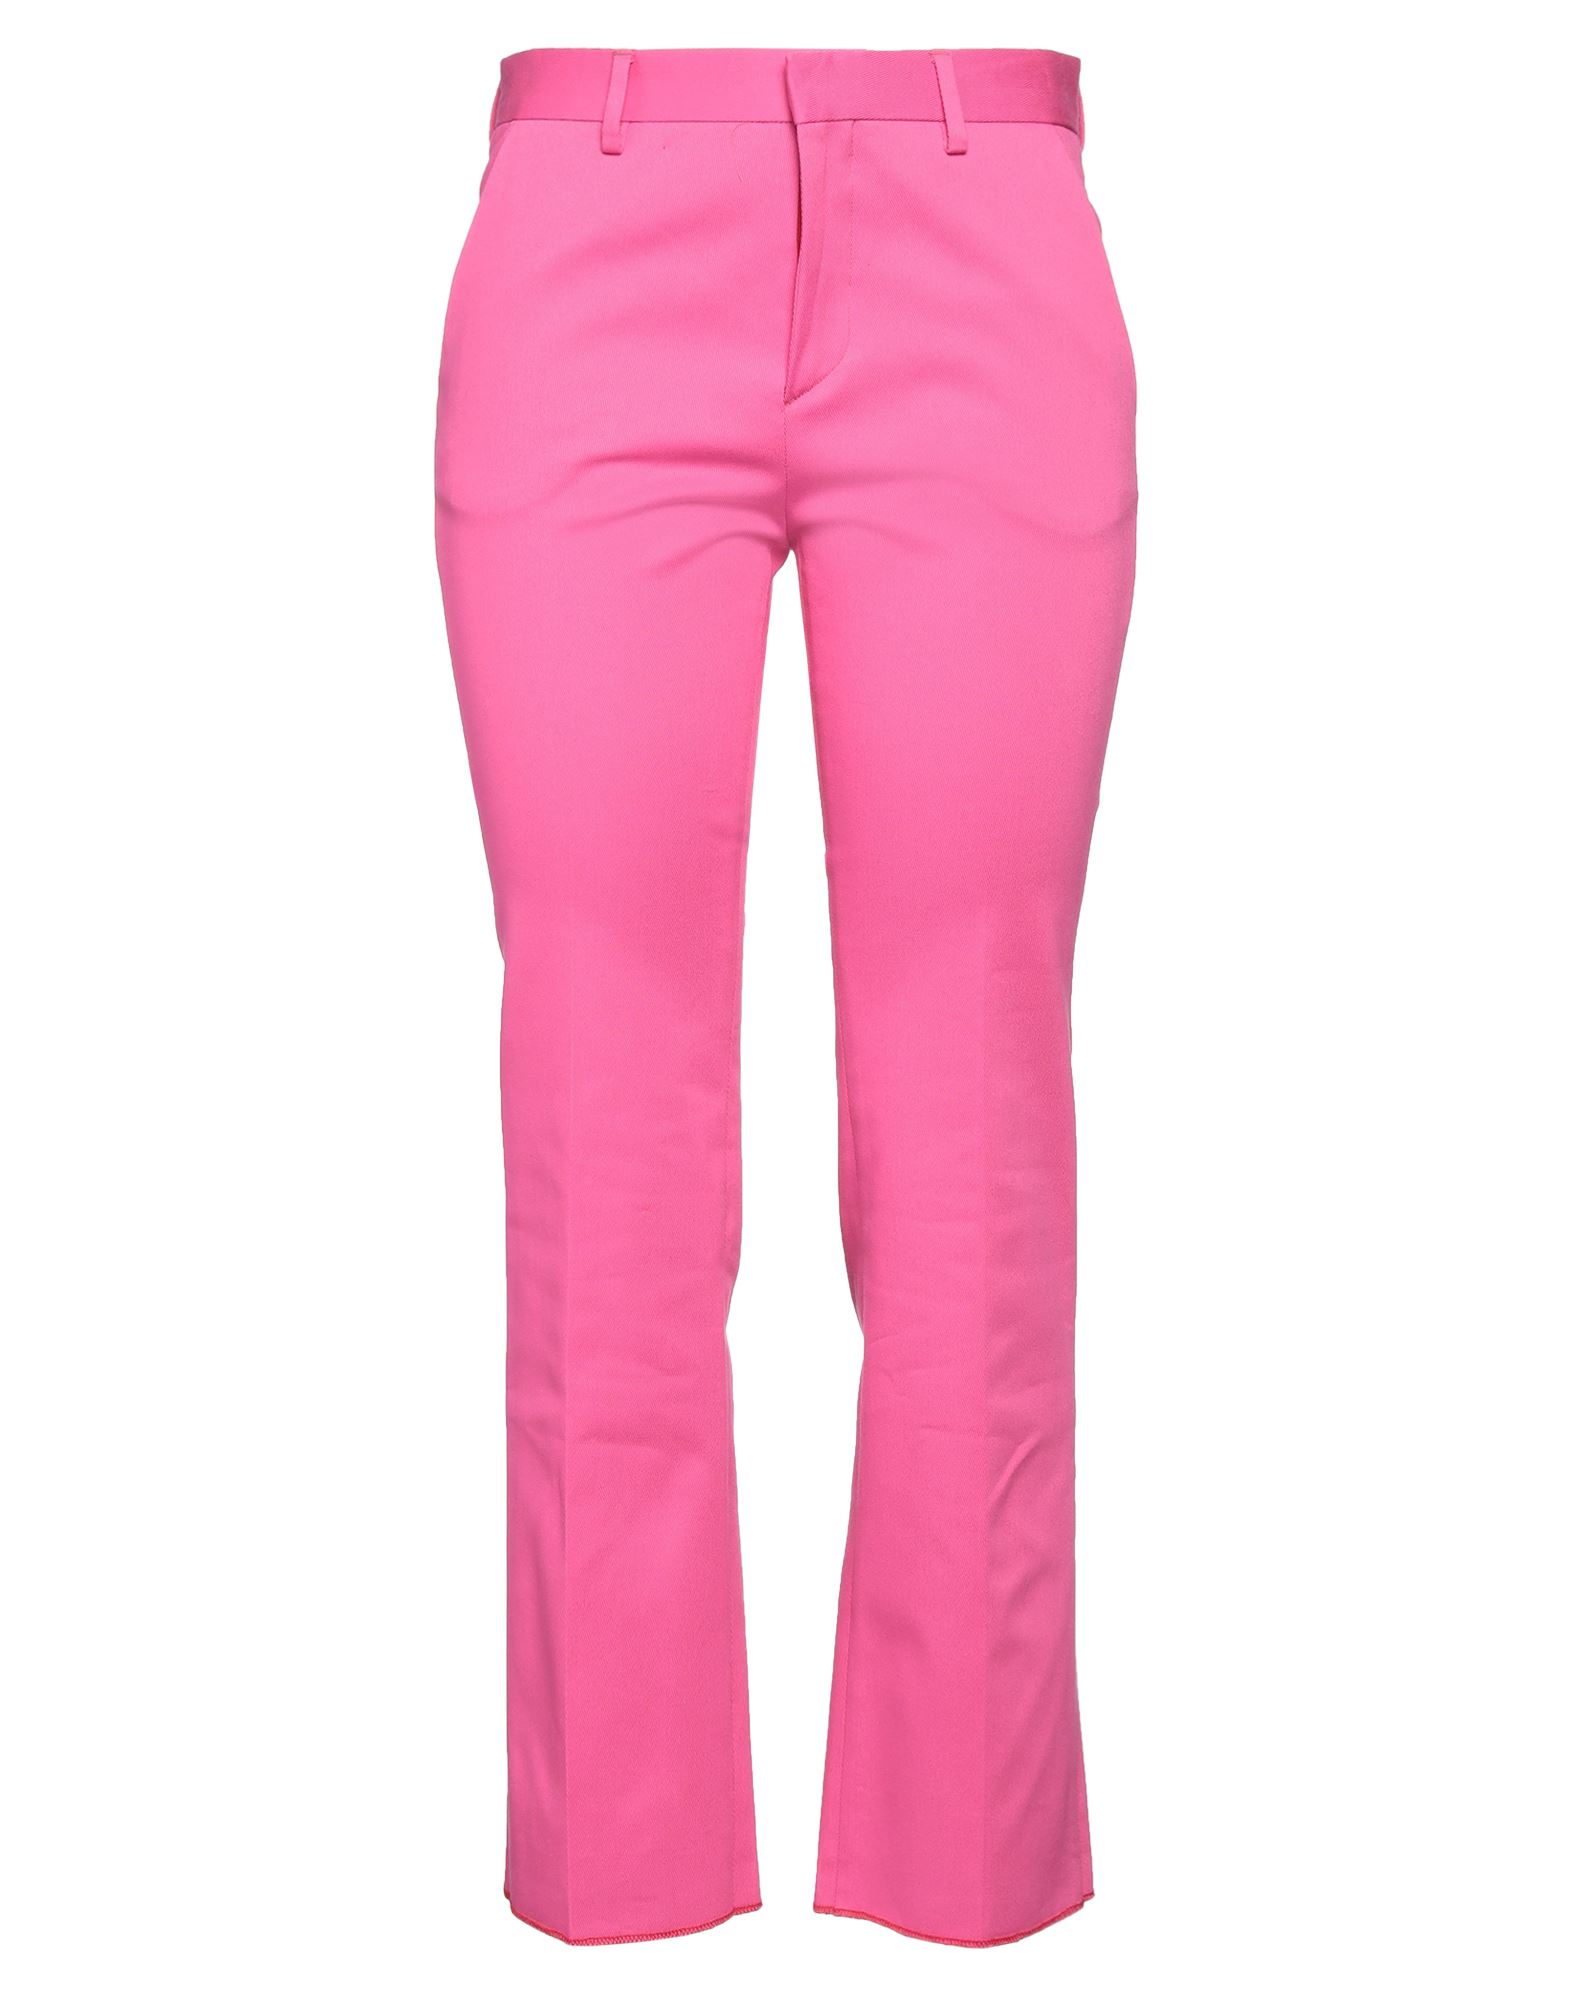 Saulina Milano Pants In Pink